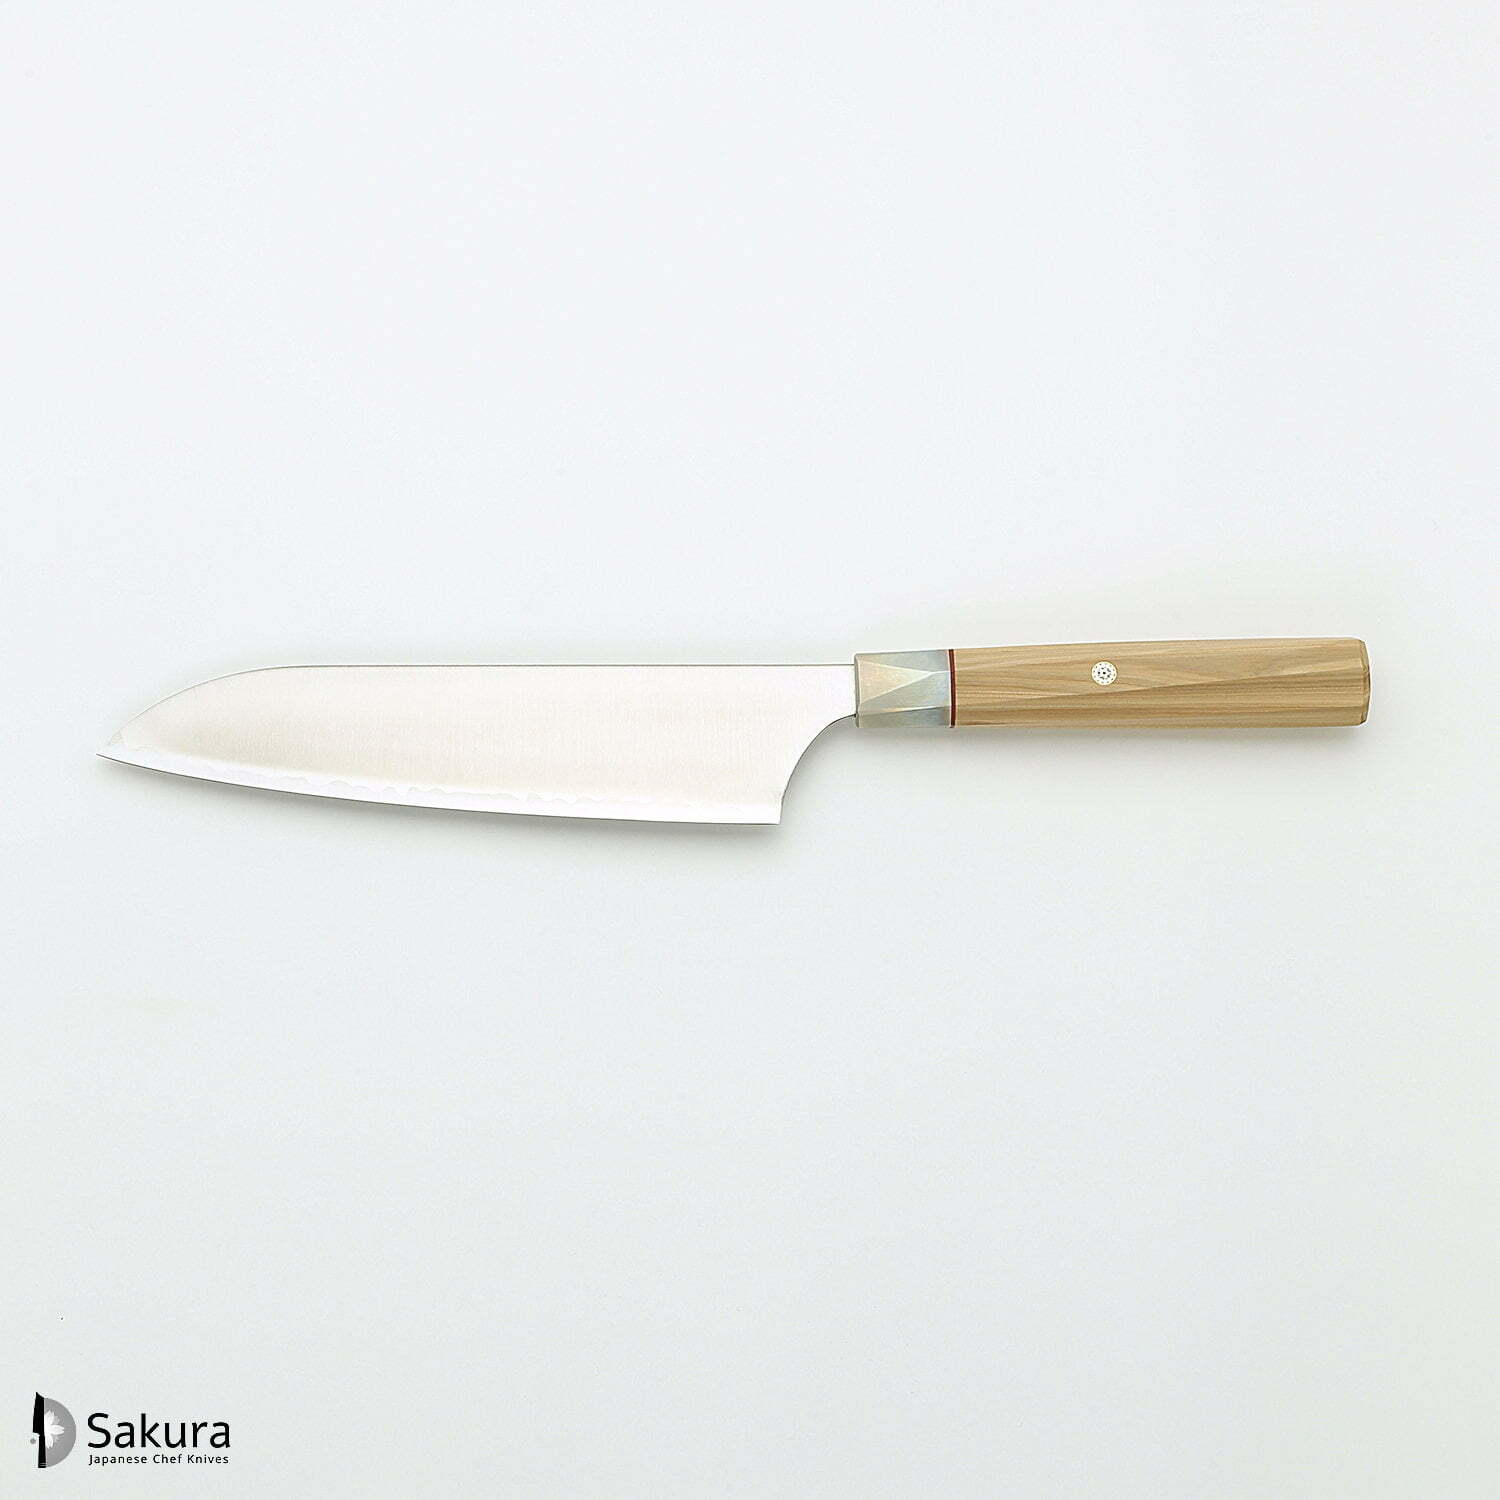 סכין רב-תכליתית סָנטוֹקוּ 180מ״מ מחושלת בעבודת יד 3 שכבות: פלדת פחמן יפנית מתקדמת מסוג Aogami Super עטופה פלדת אל-חלד גימור מט מלוטש מקוסטה זאנמאיי יפן ZBX-5003B